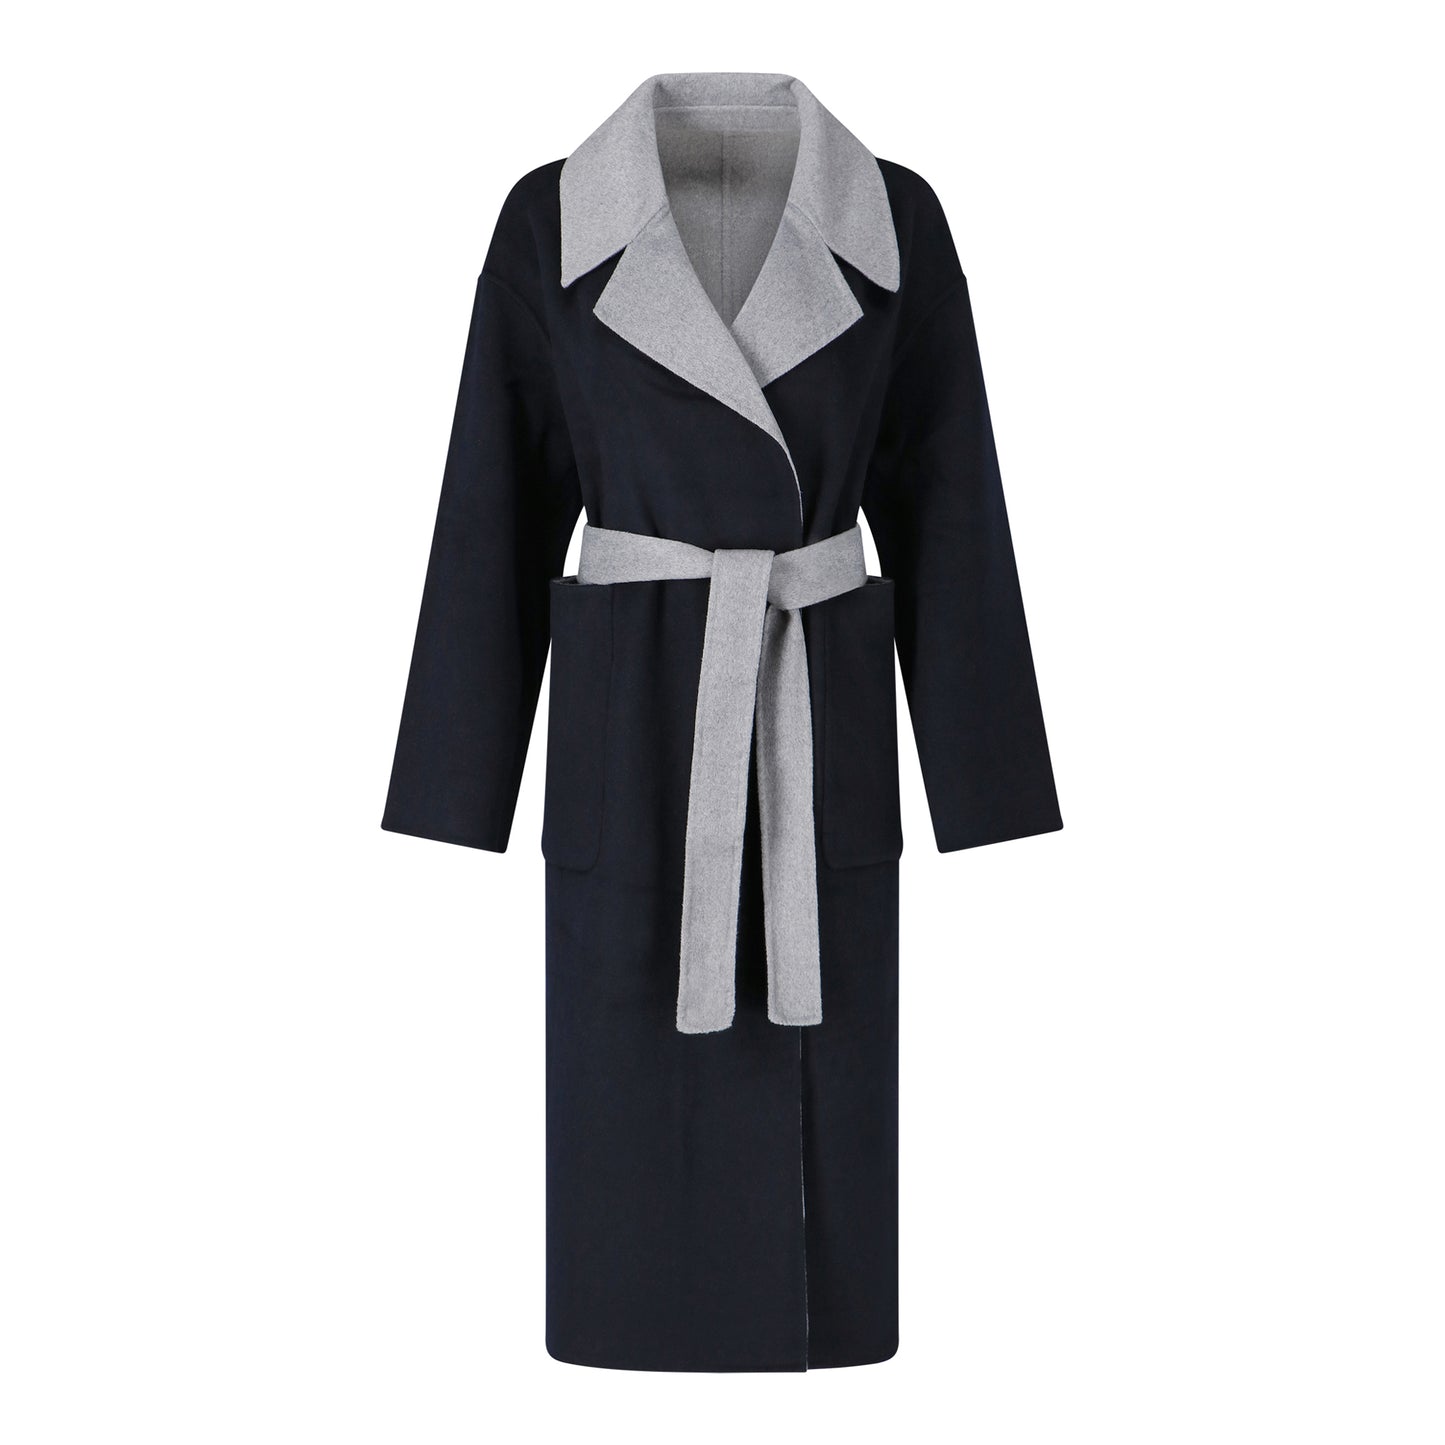 Manteau en laine Louise marine/gris clair